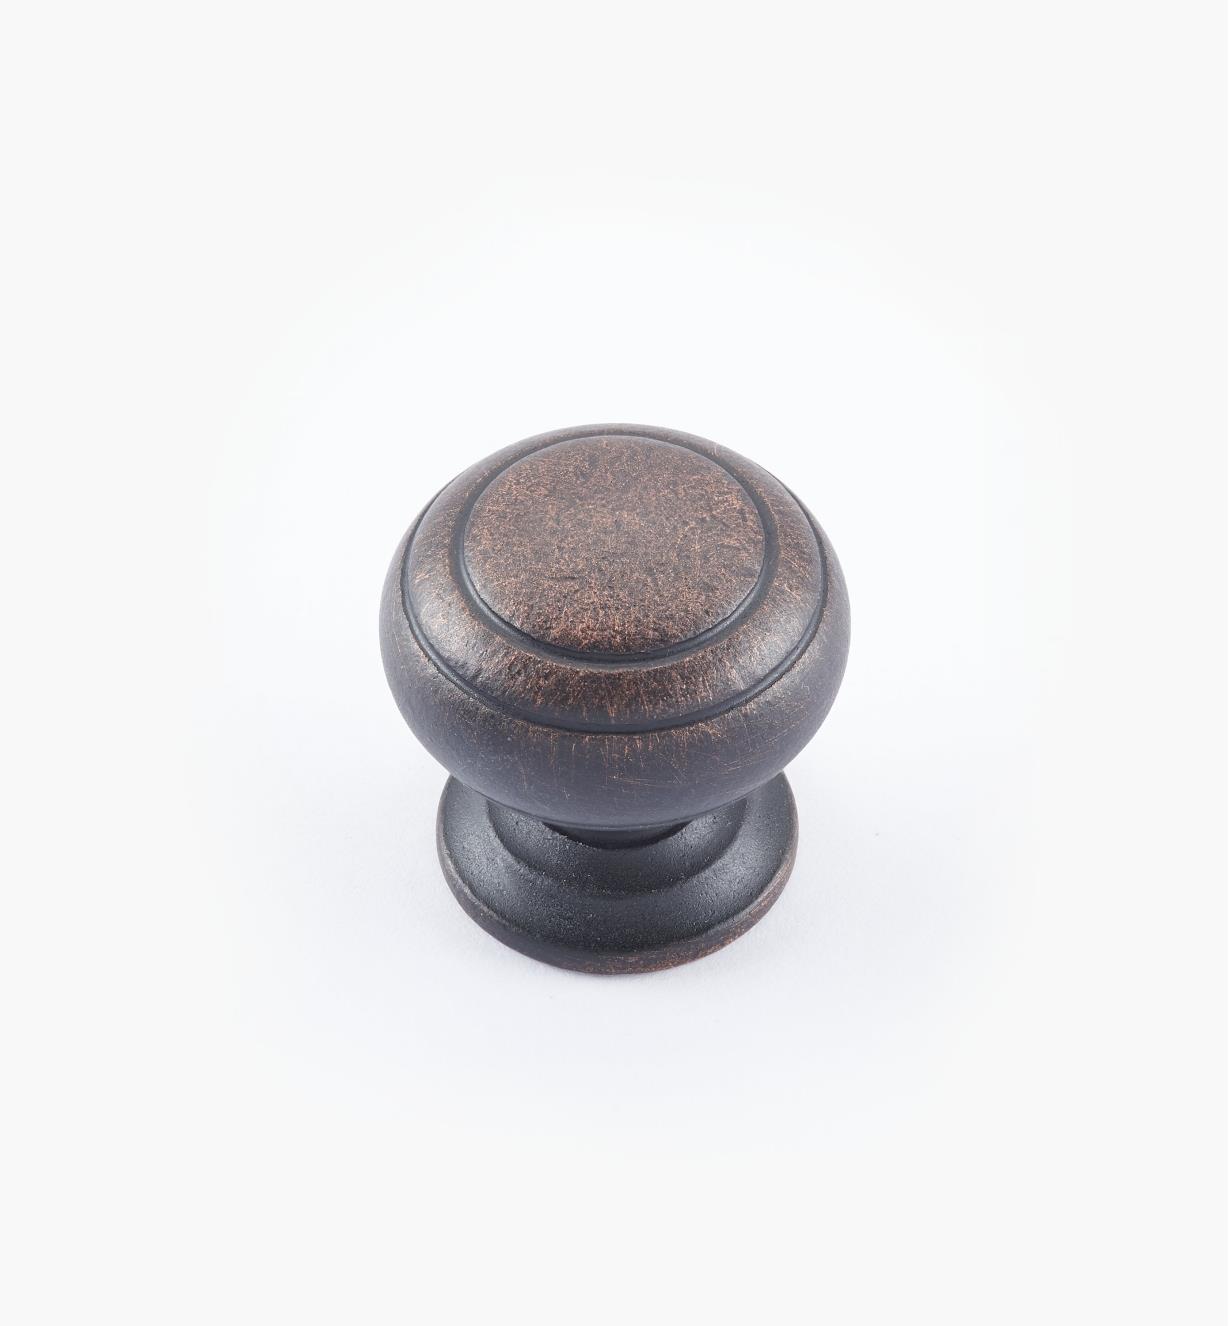 02W3265 - Bouton annelé de 1 po x 1 po, série Vieux Bronze, laiton tourné